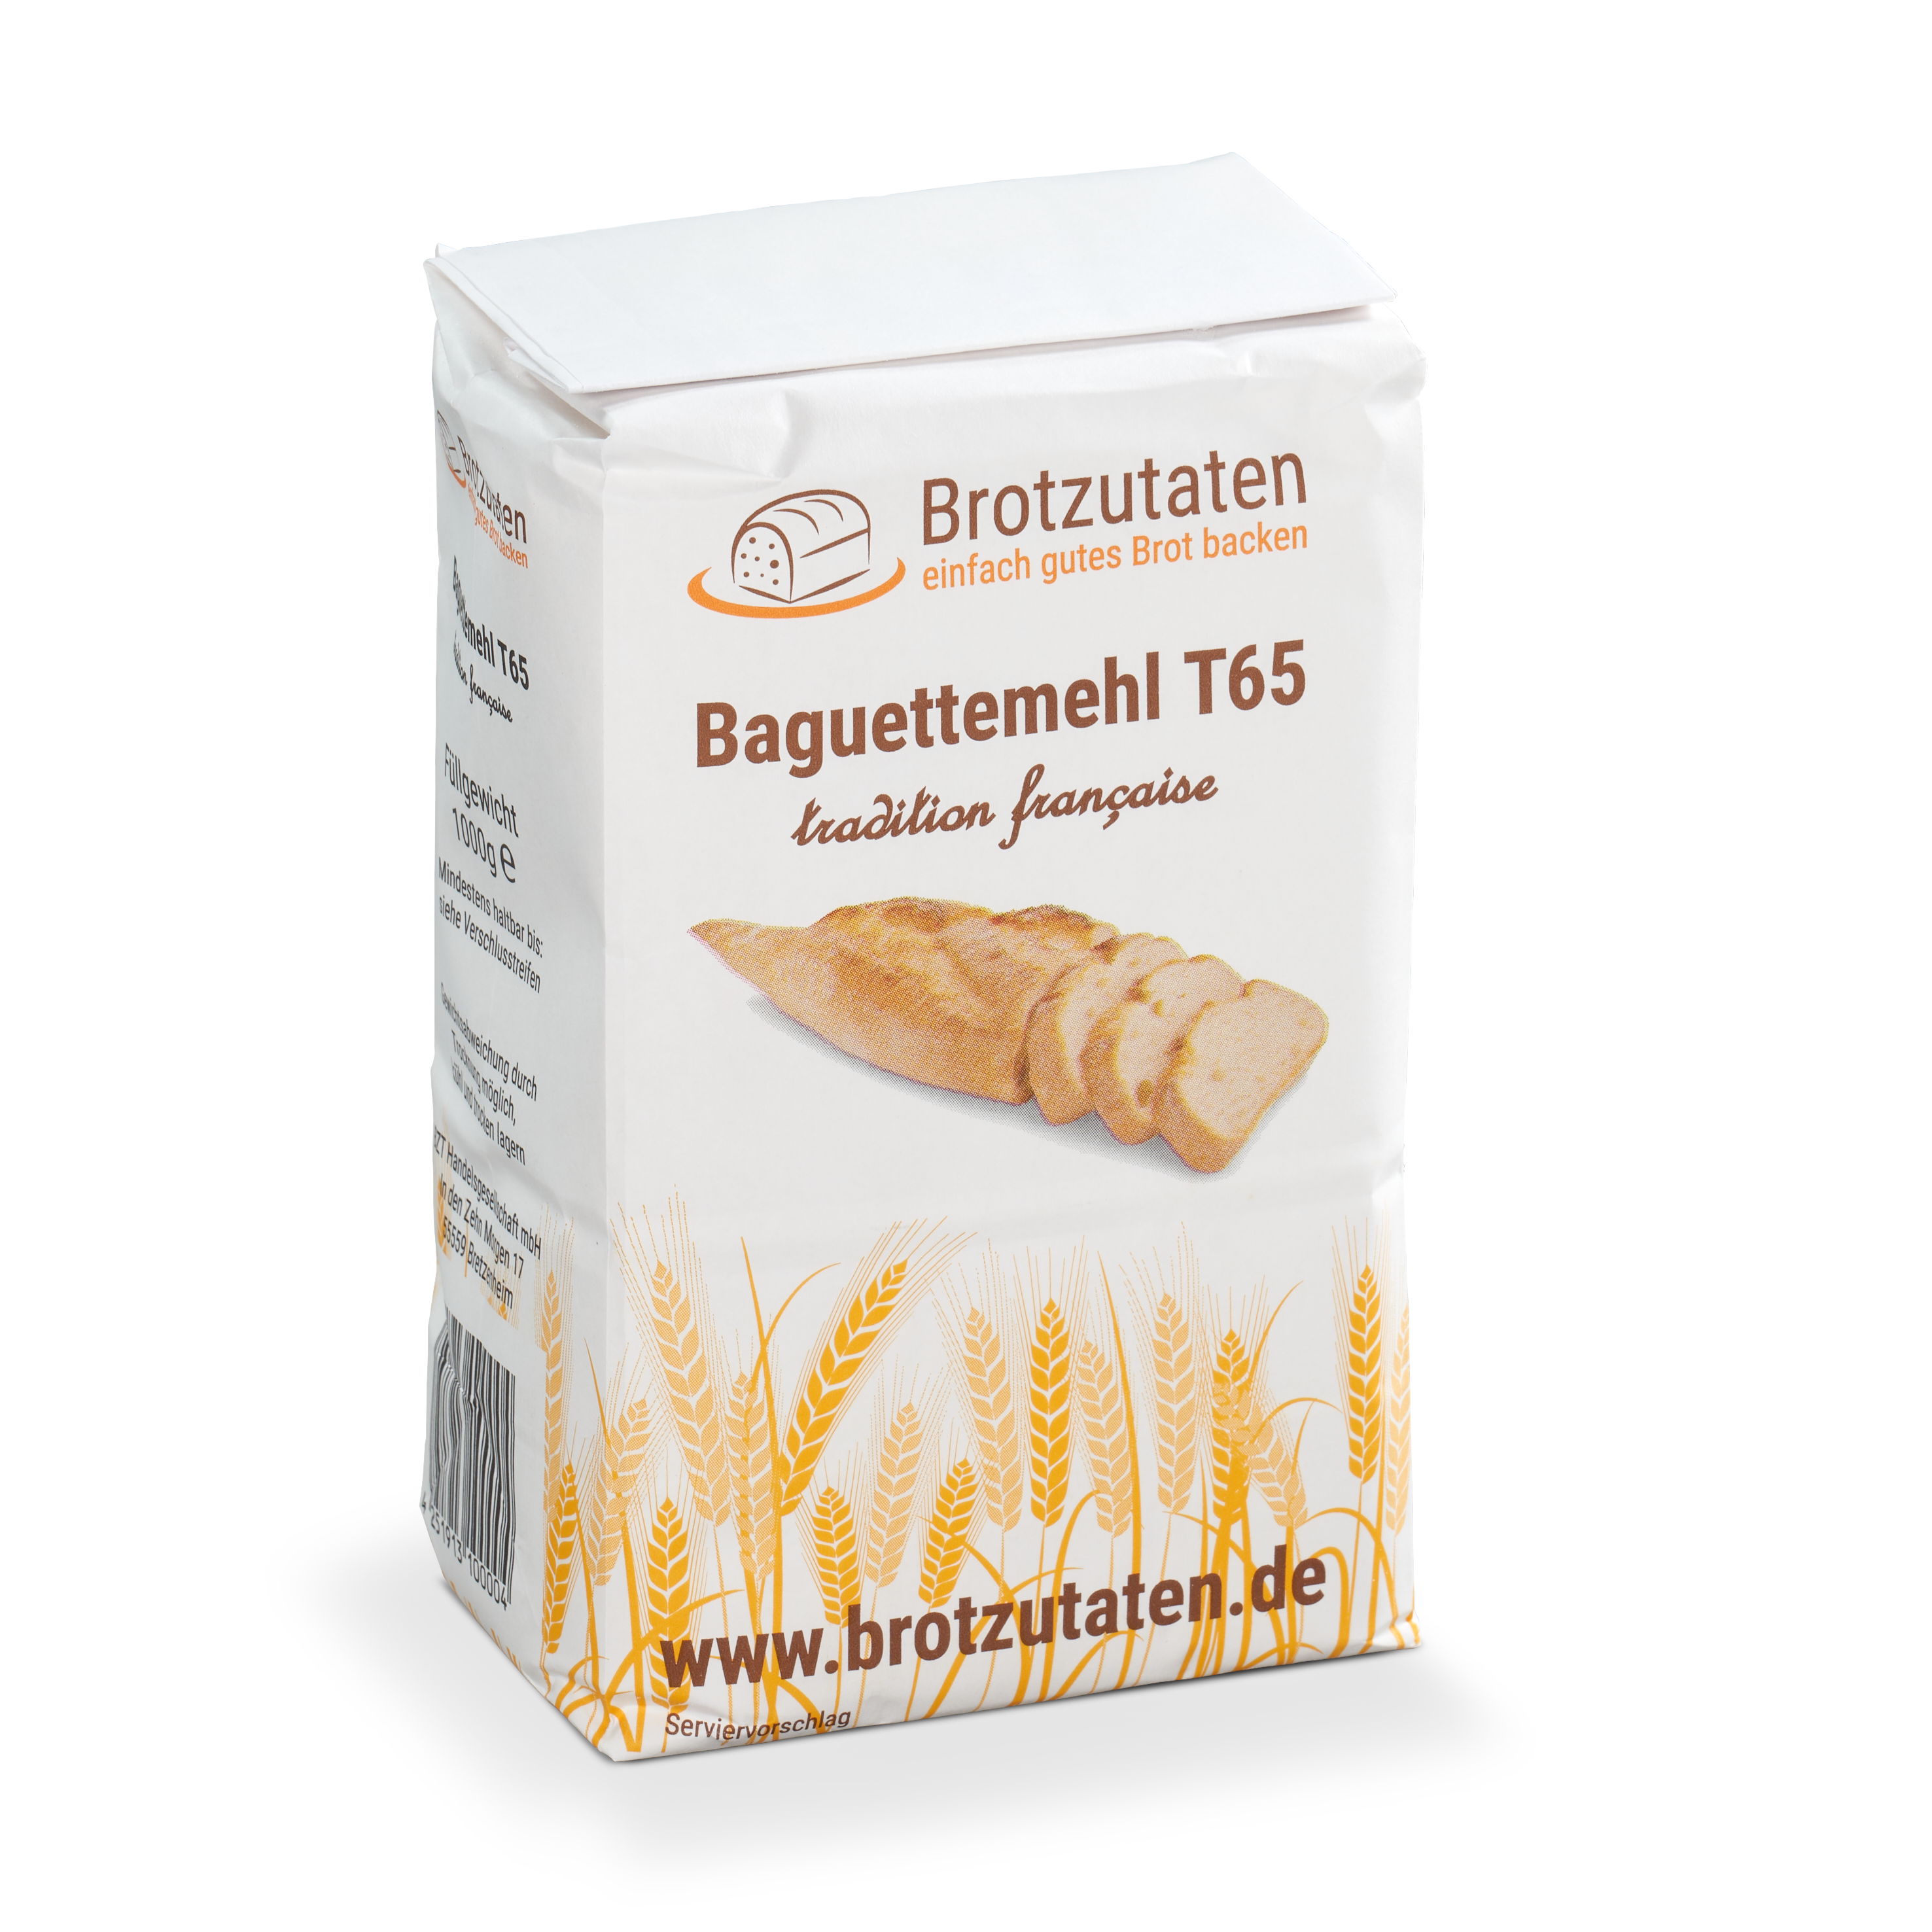 1kg Baguettemehl T65 Farine de blé